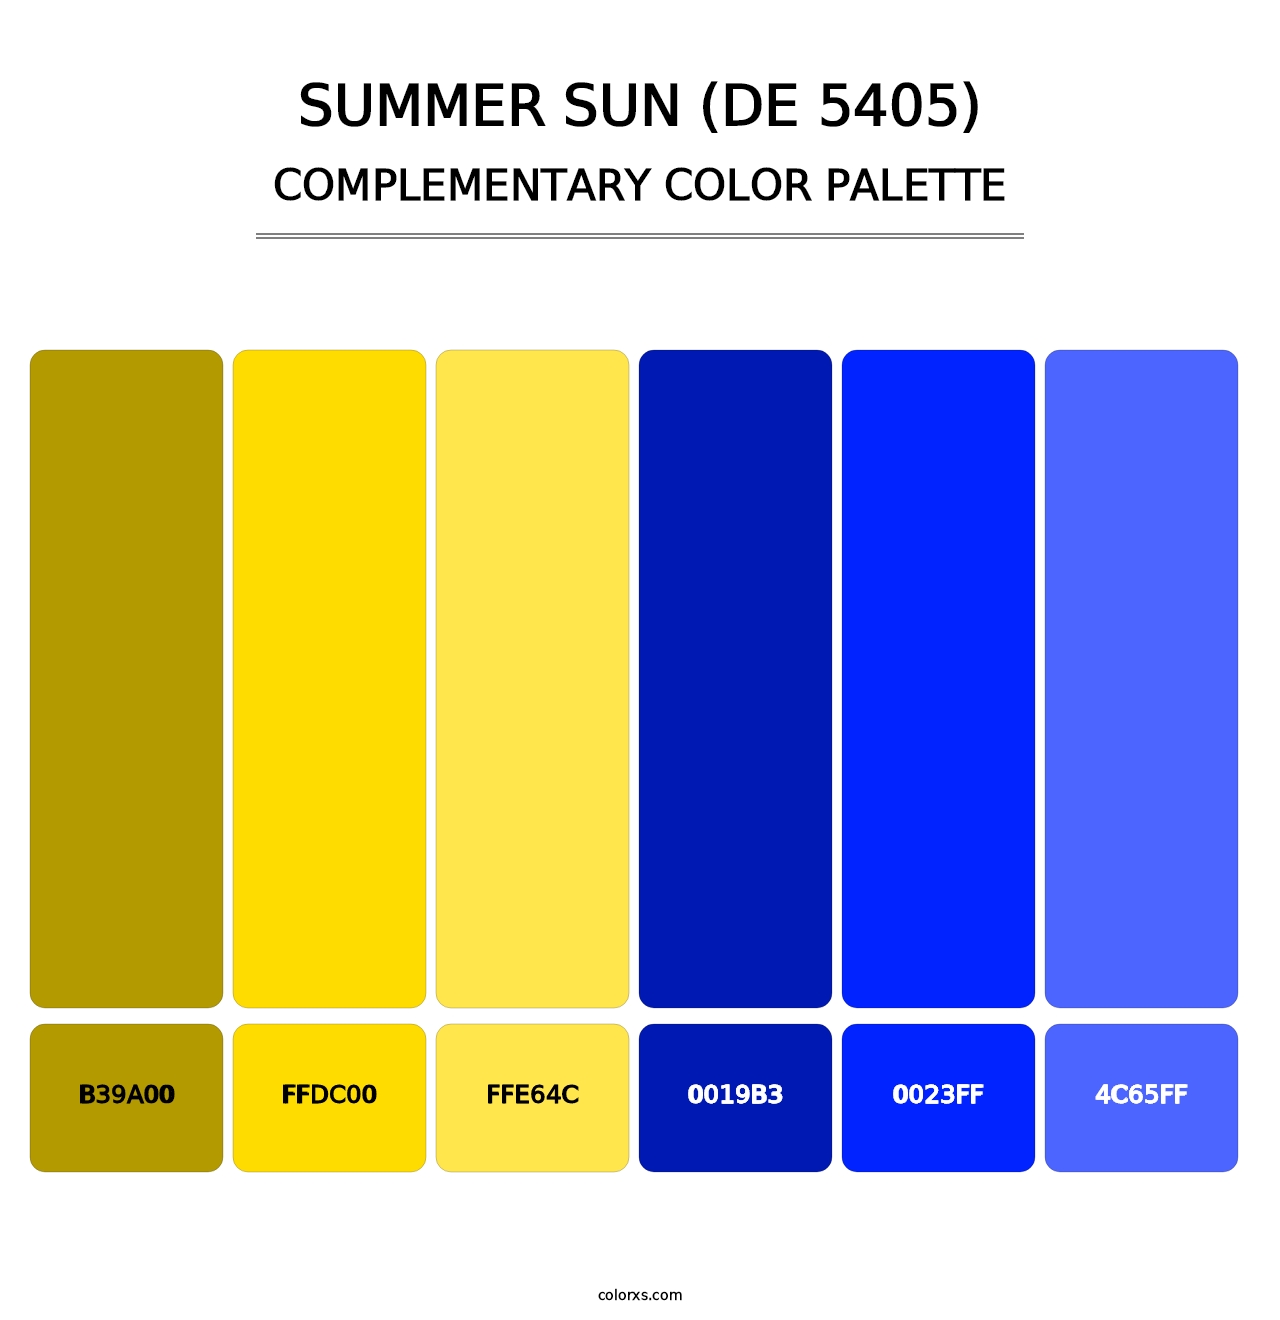 Summer Sun (DE 5405) - Complementary Color Palette